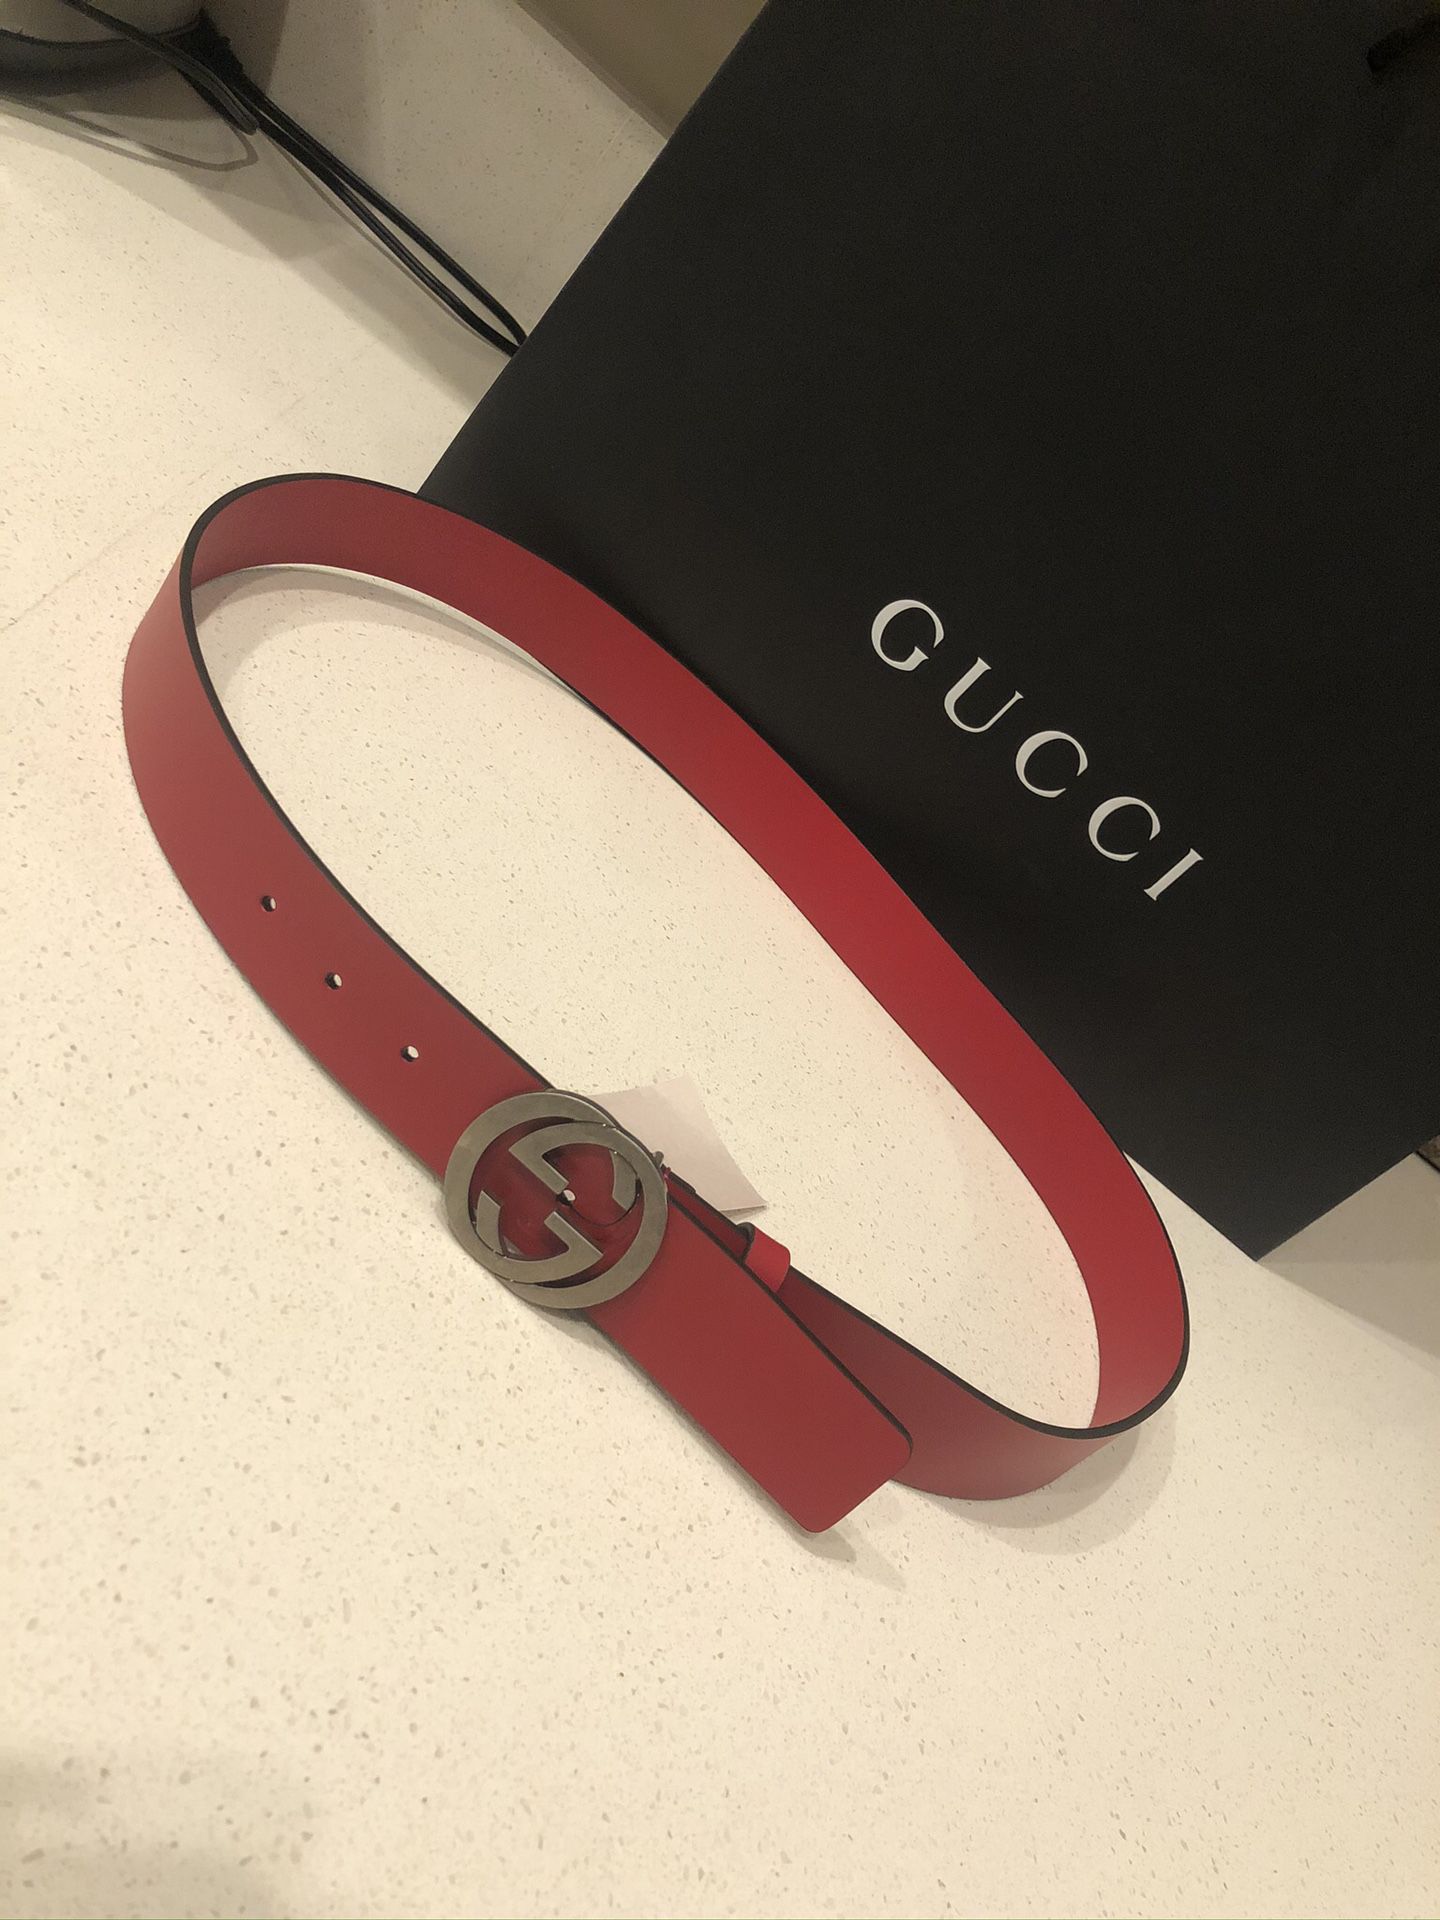 Gucci Men’s belt